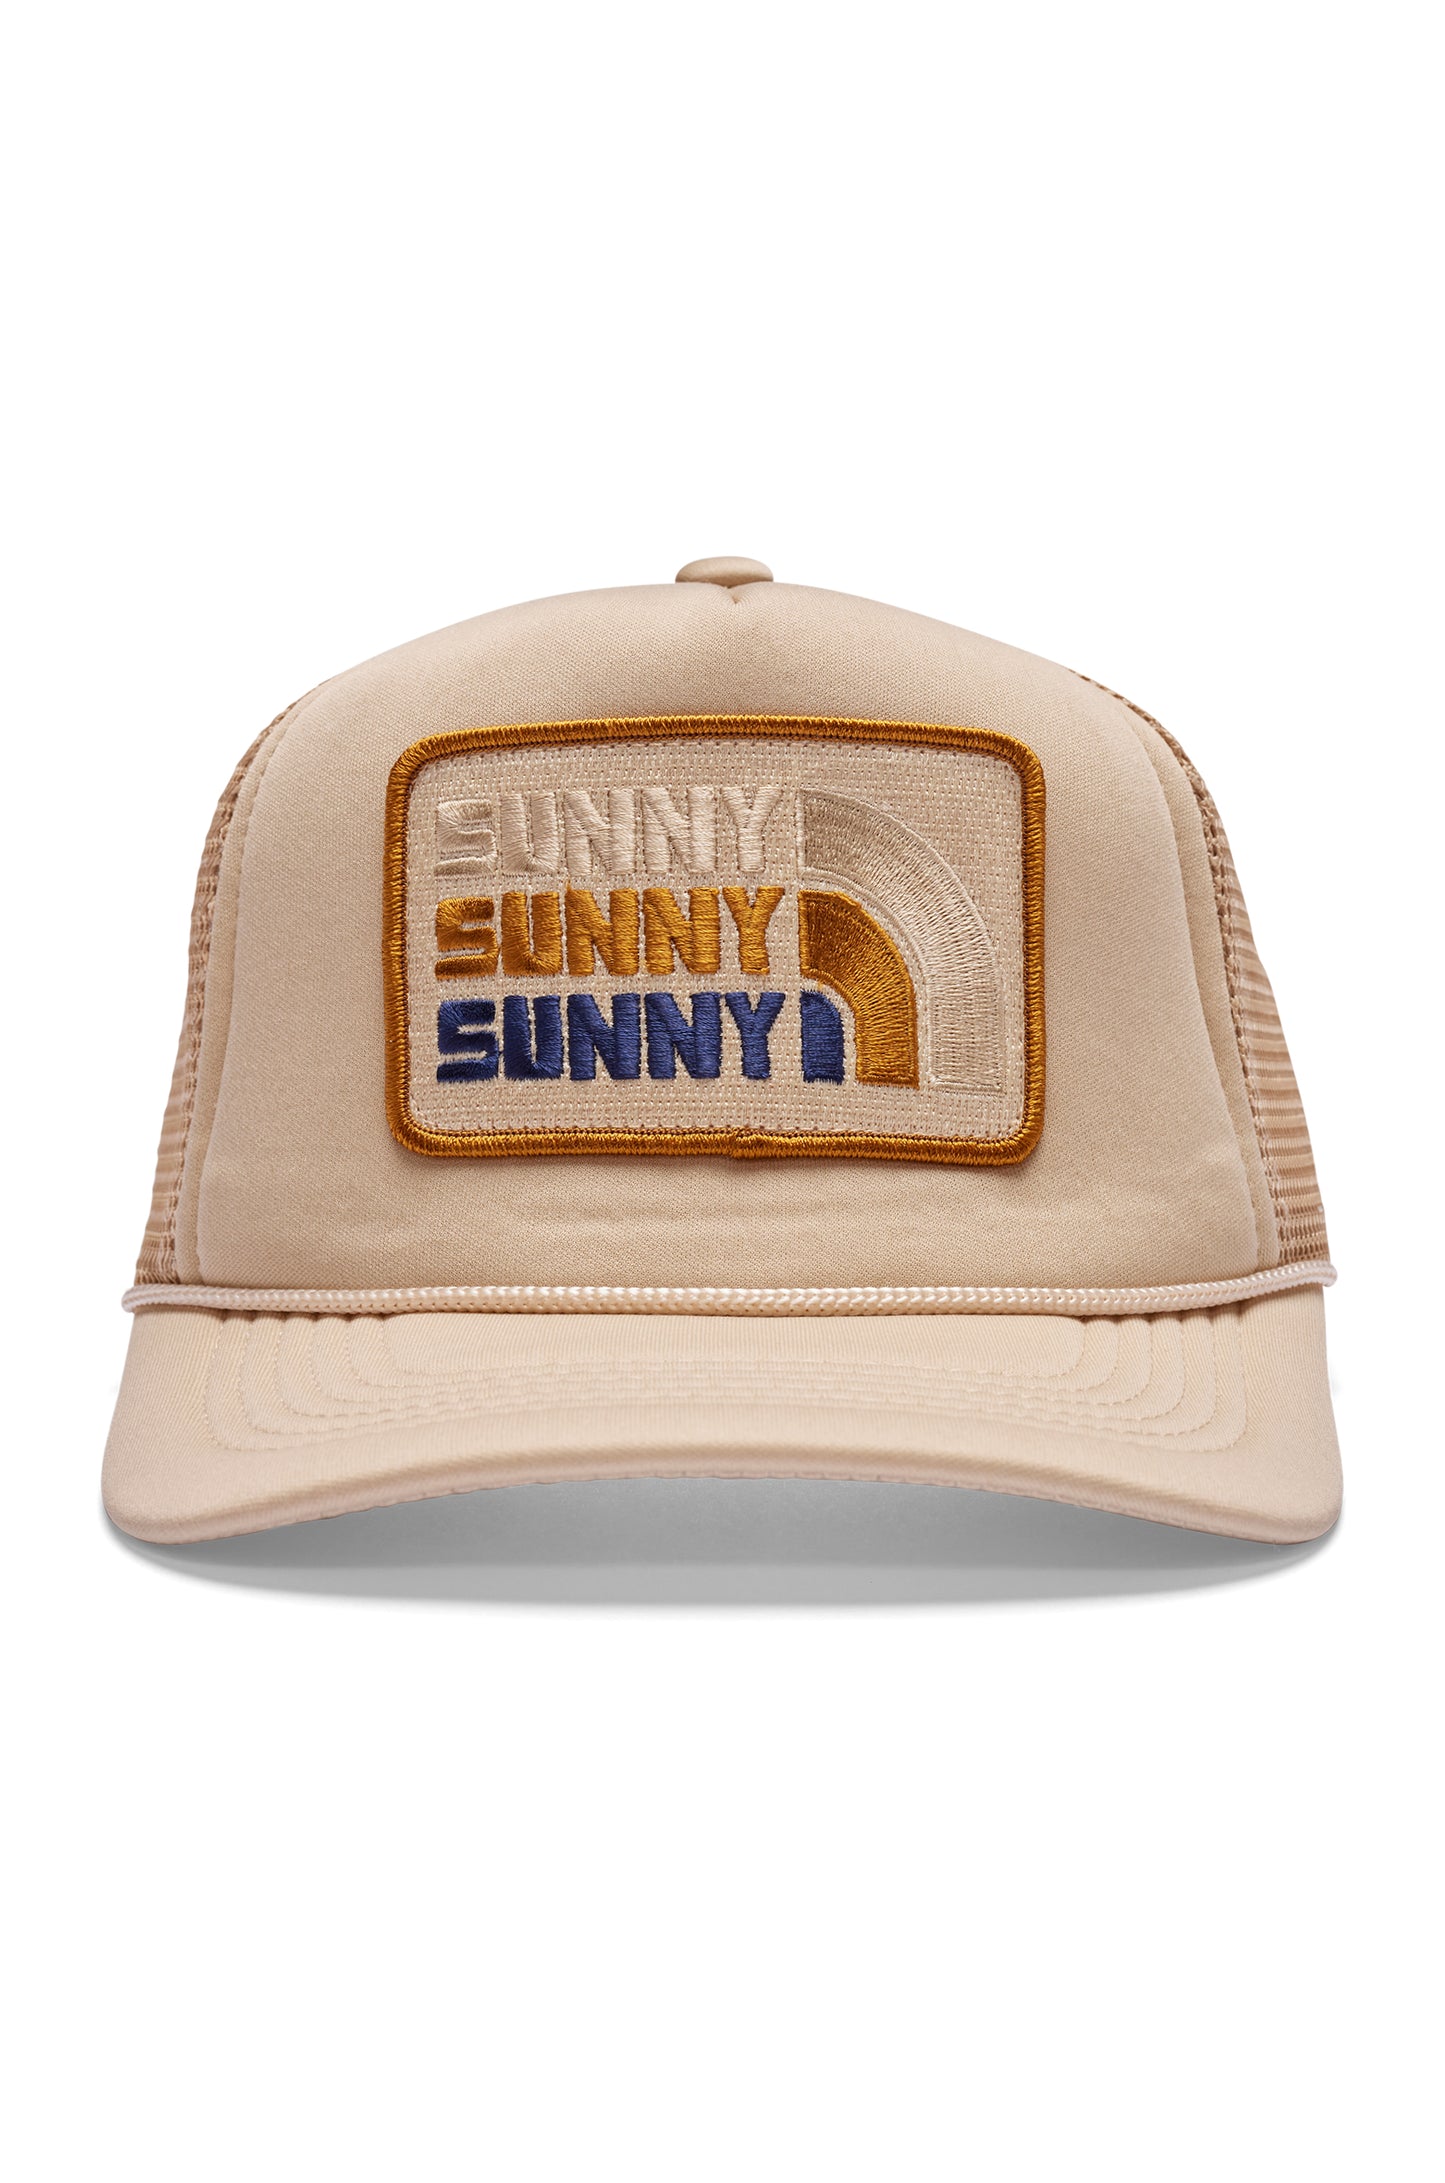 Sunny Sunny Sunny- Tan